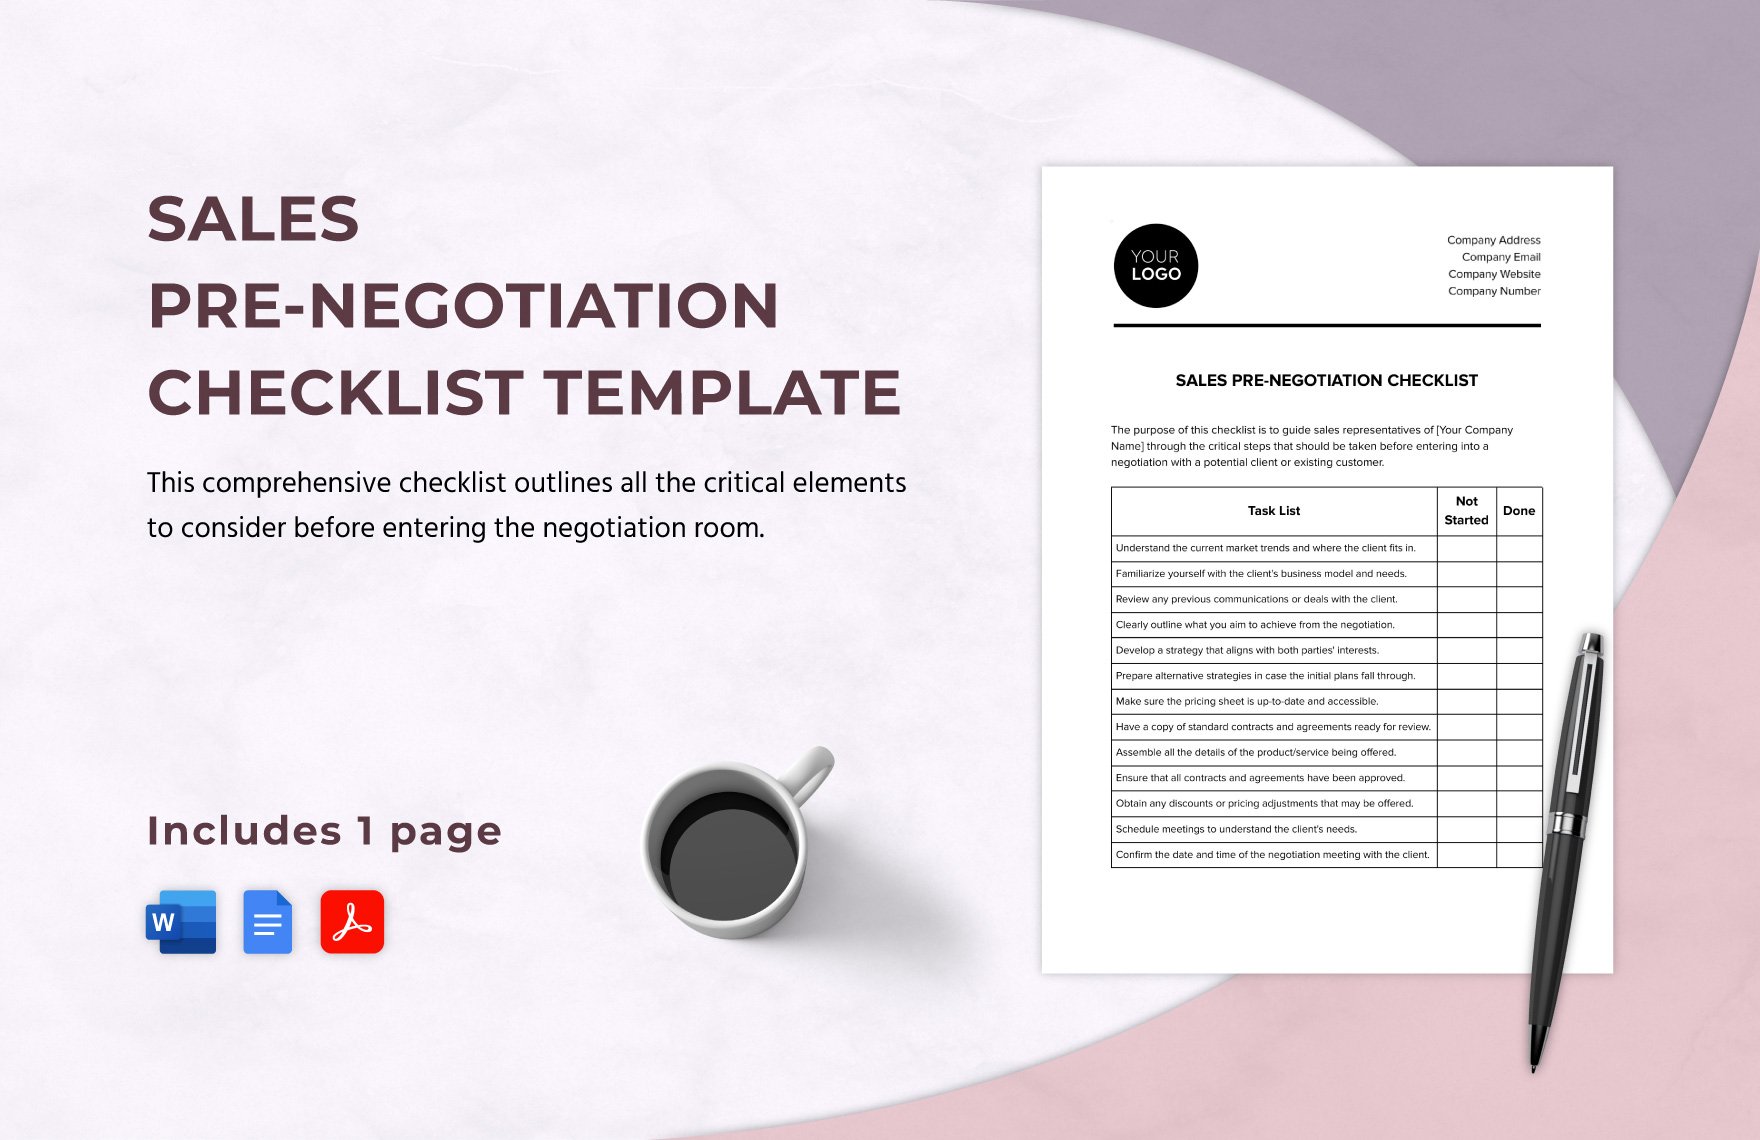 Sales Pre-Negotiation Checklist Template in Word, Google Docs, PDF